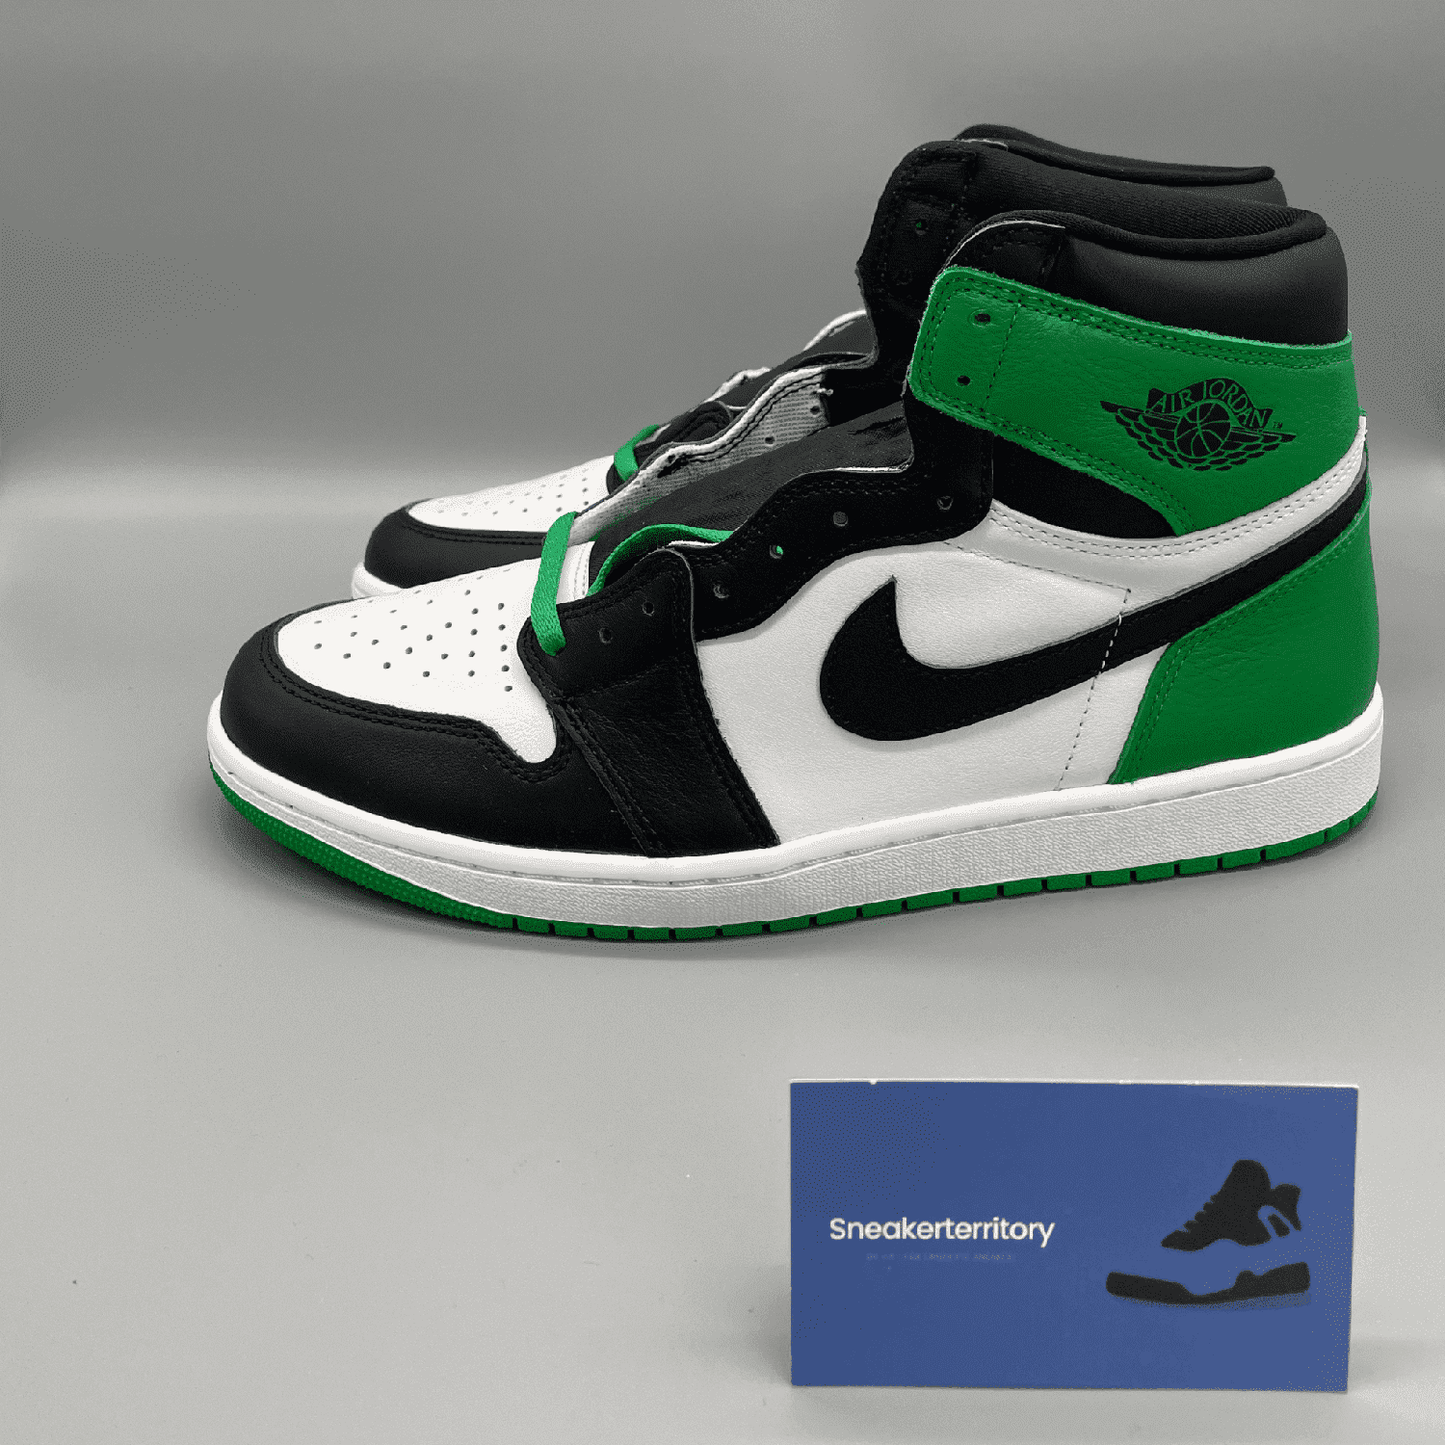 Air Jordan 1 High OG Lucky Green - Sneakerterritory; Sneaker Territory 4